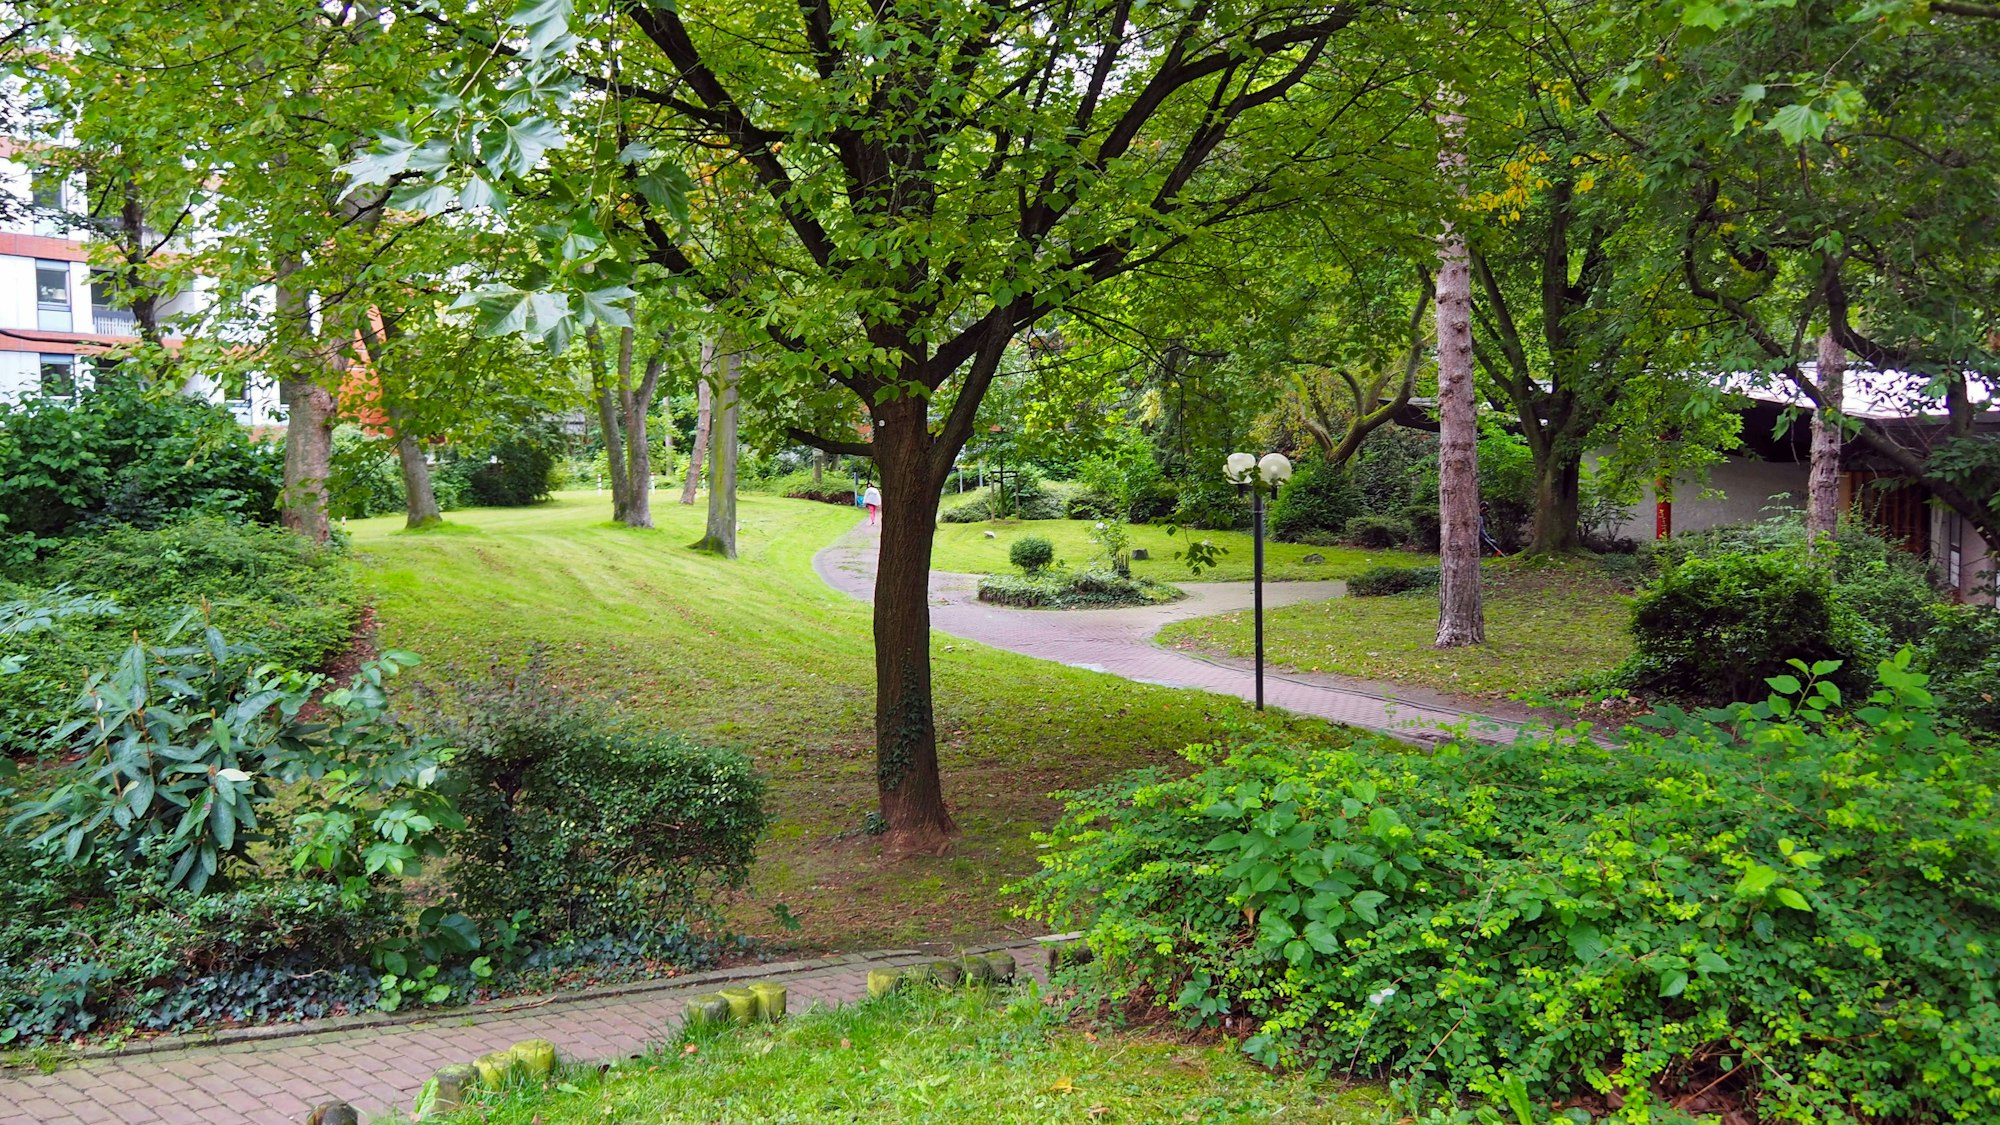 Ein gepflegter Park mit Bäumen und Wegen ist zu sehen.